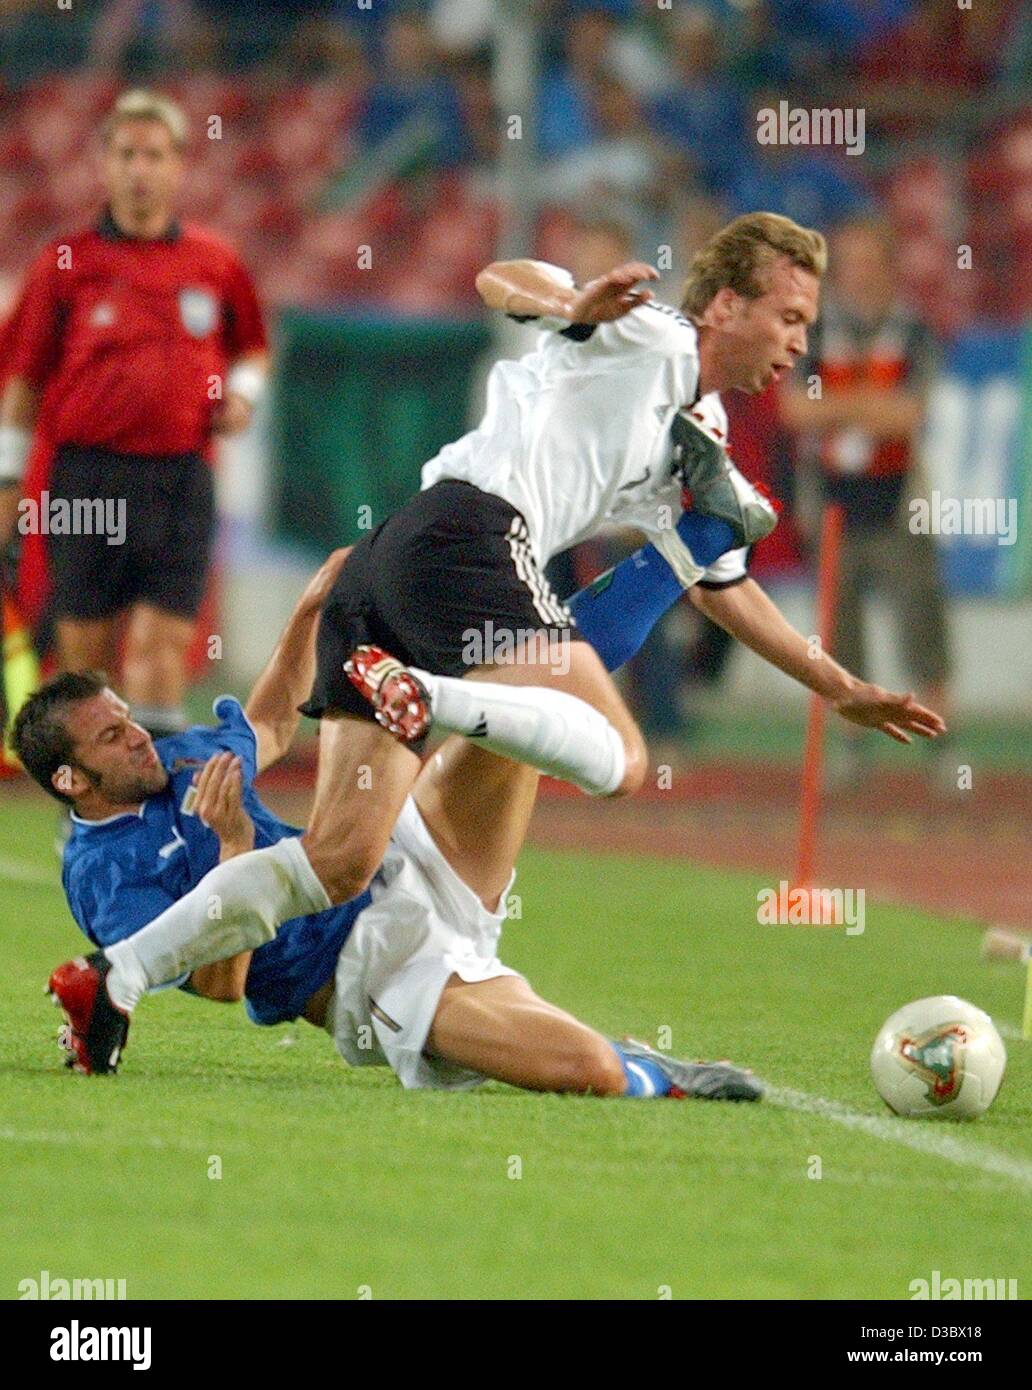 (Dpa) - avanti italiano Alessandro del piero (L) arresta il difensore tedesco Andreas Hinkel (R) durante il soccer amichevole tra Germania e Italia a Stoccarda, Germania, 20 agosto 2003. Italia vince 1-0. Foto Stock